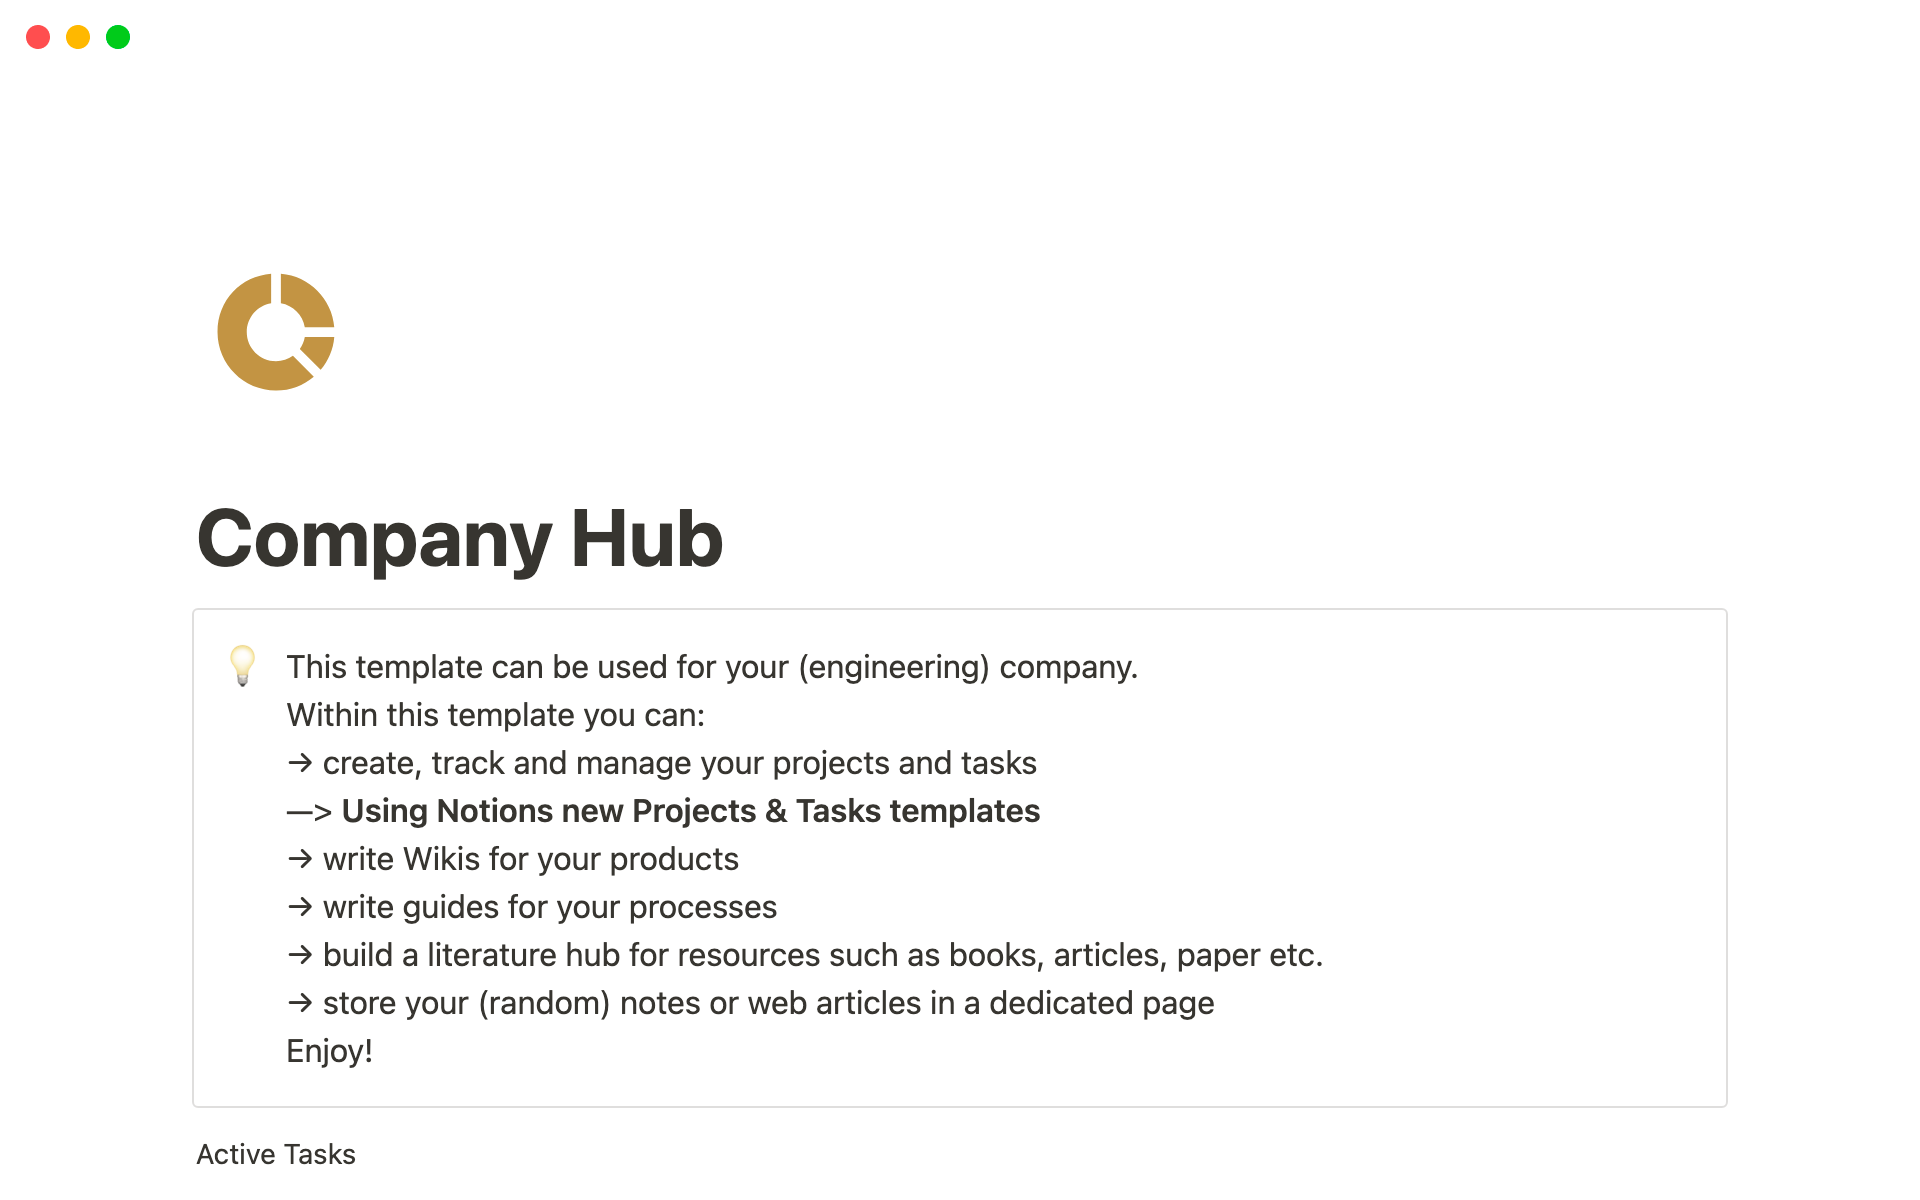 Vista previa de una plantilla para Your Company Hub